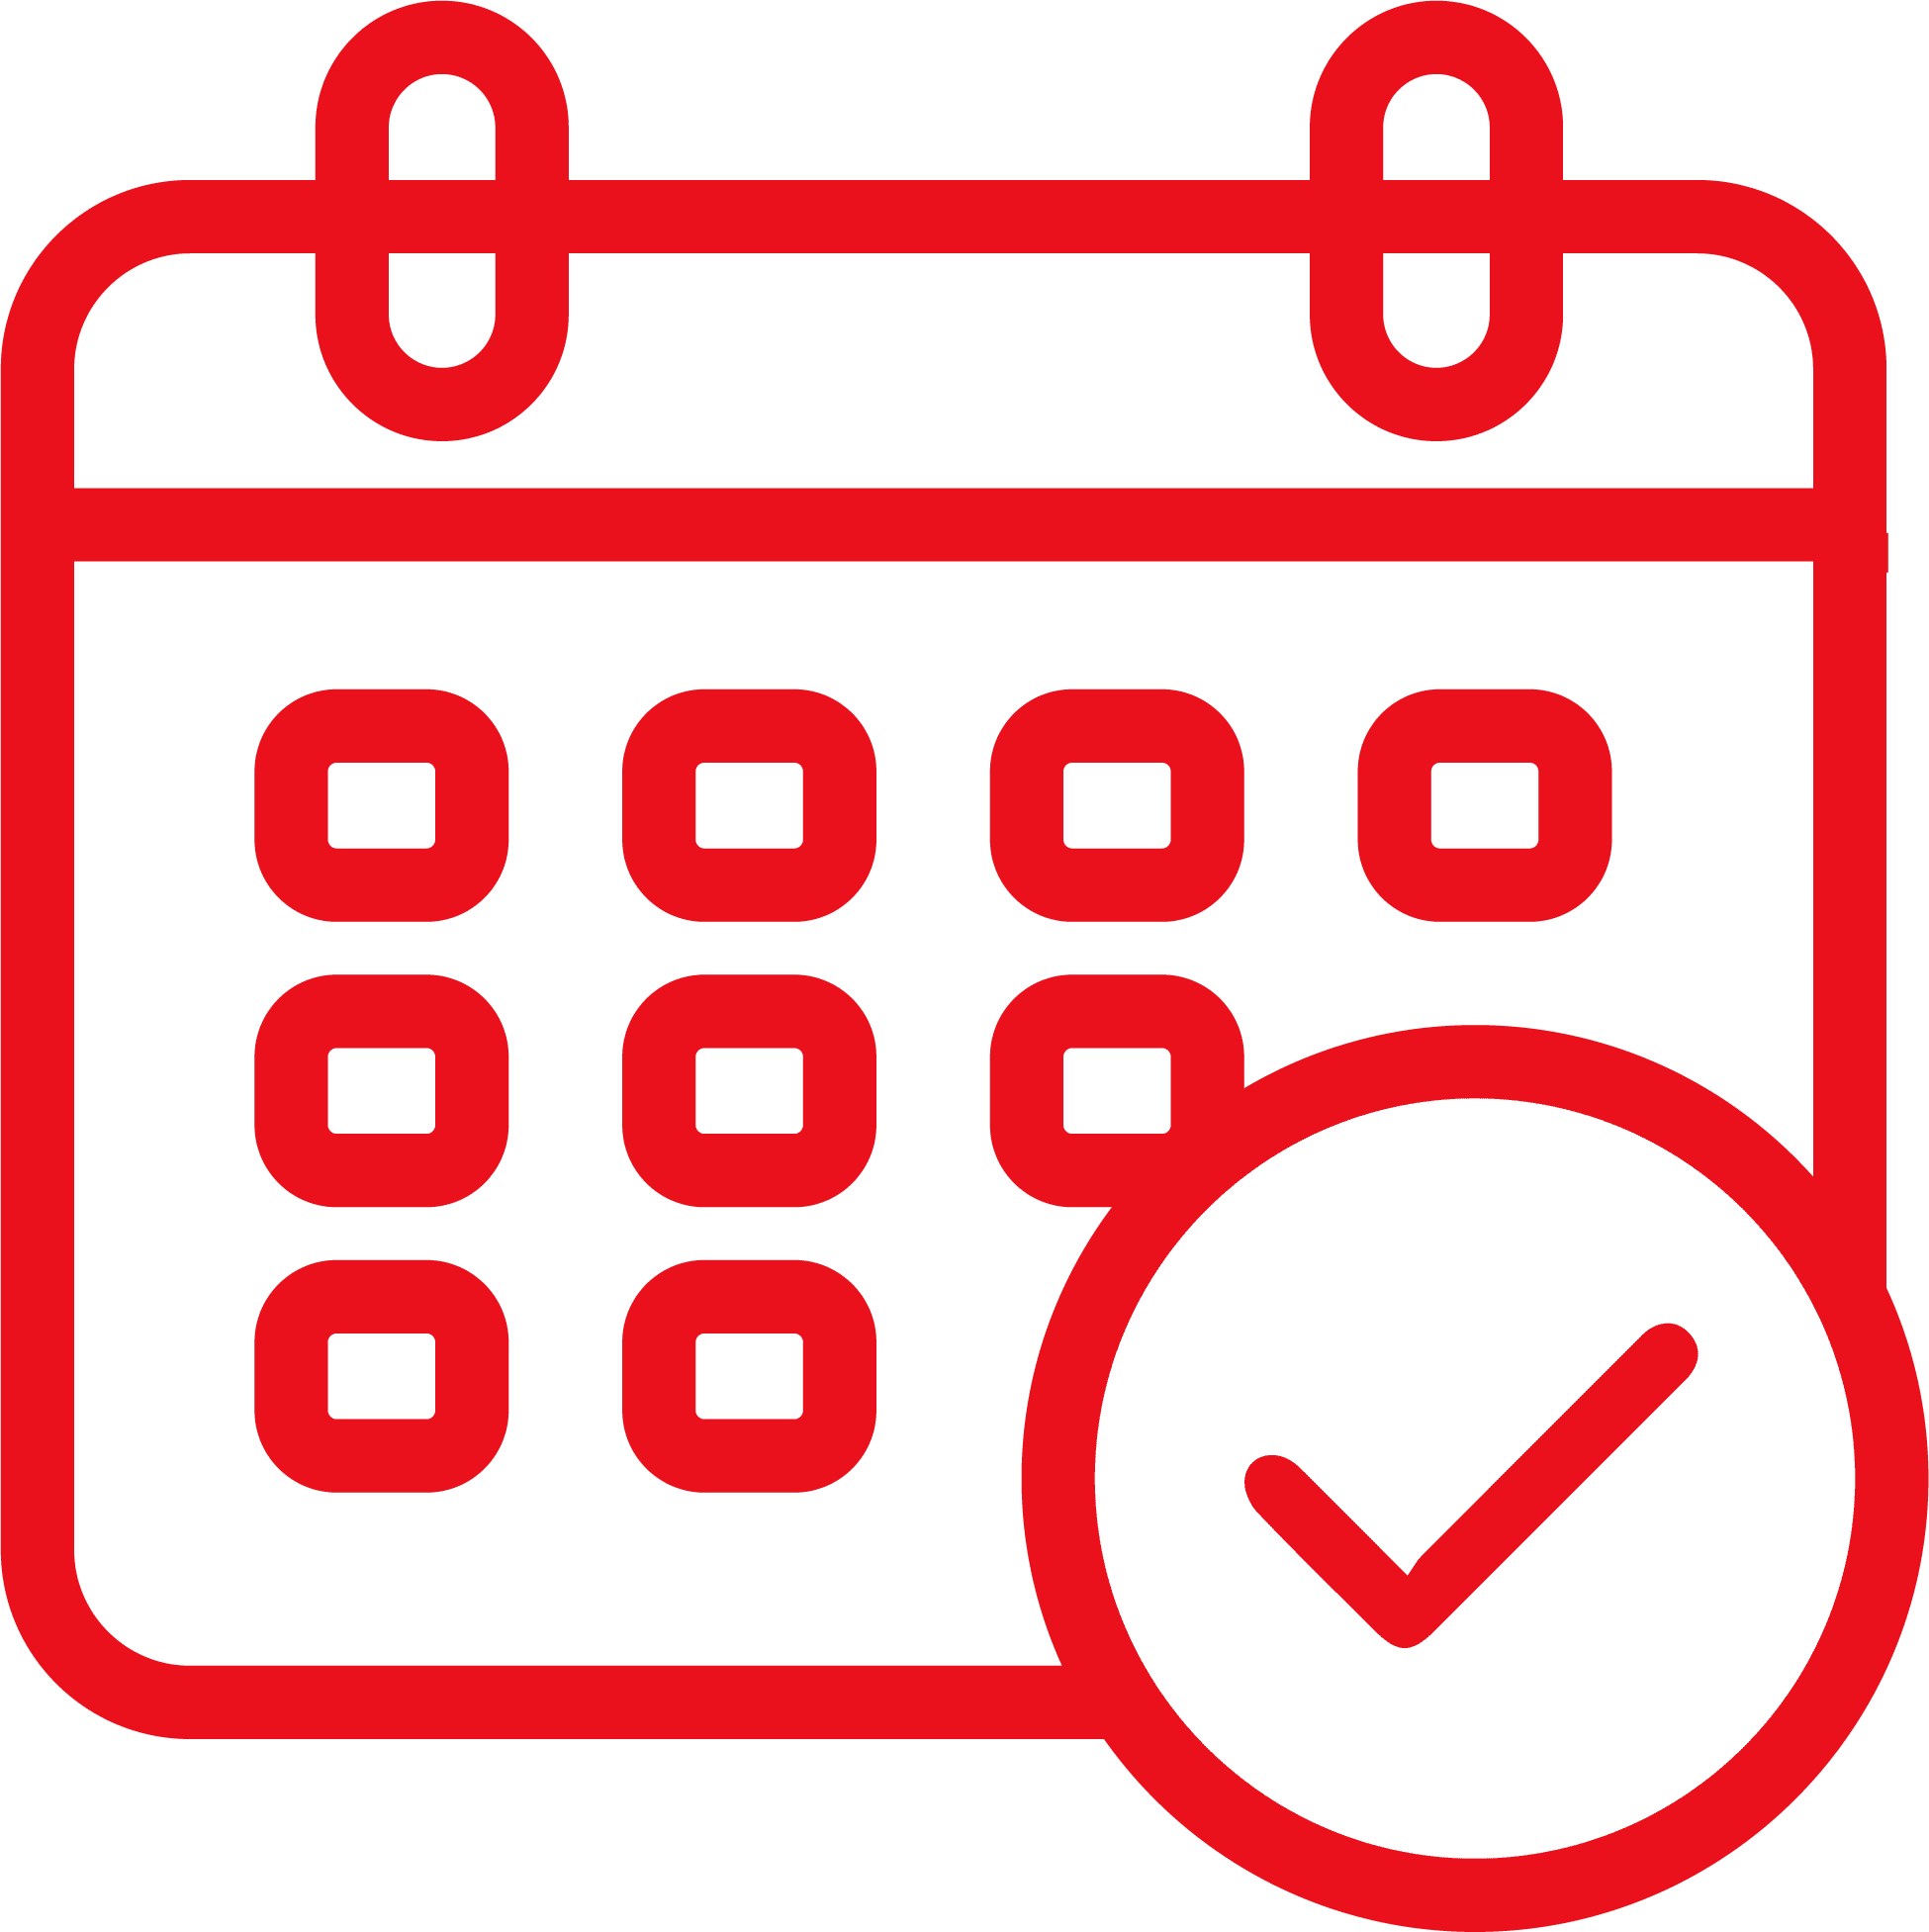 Calendar and checkmark icon